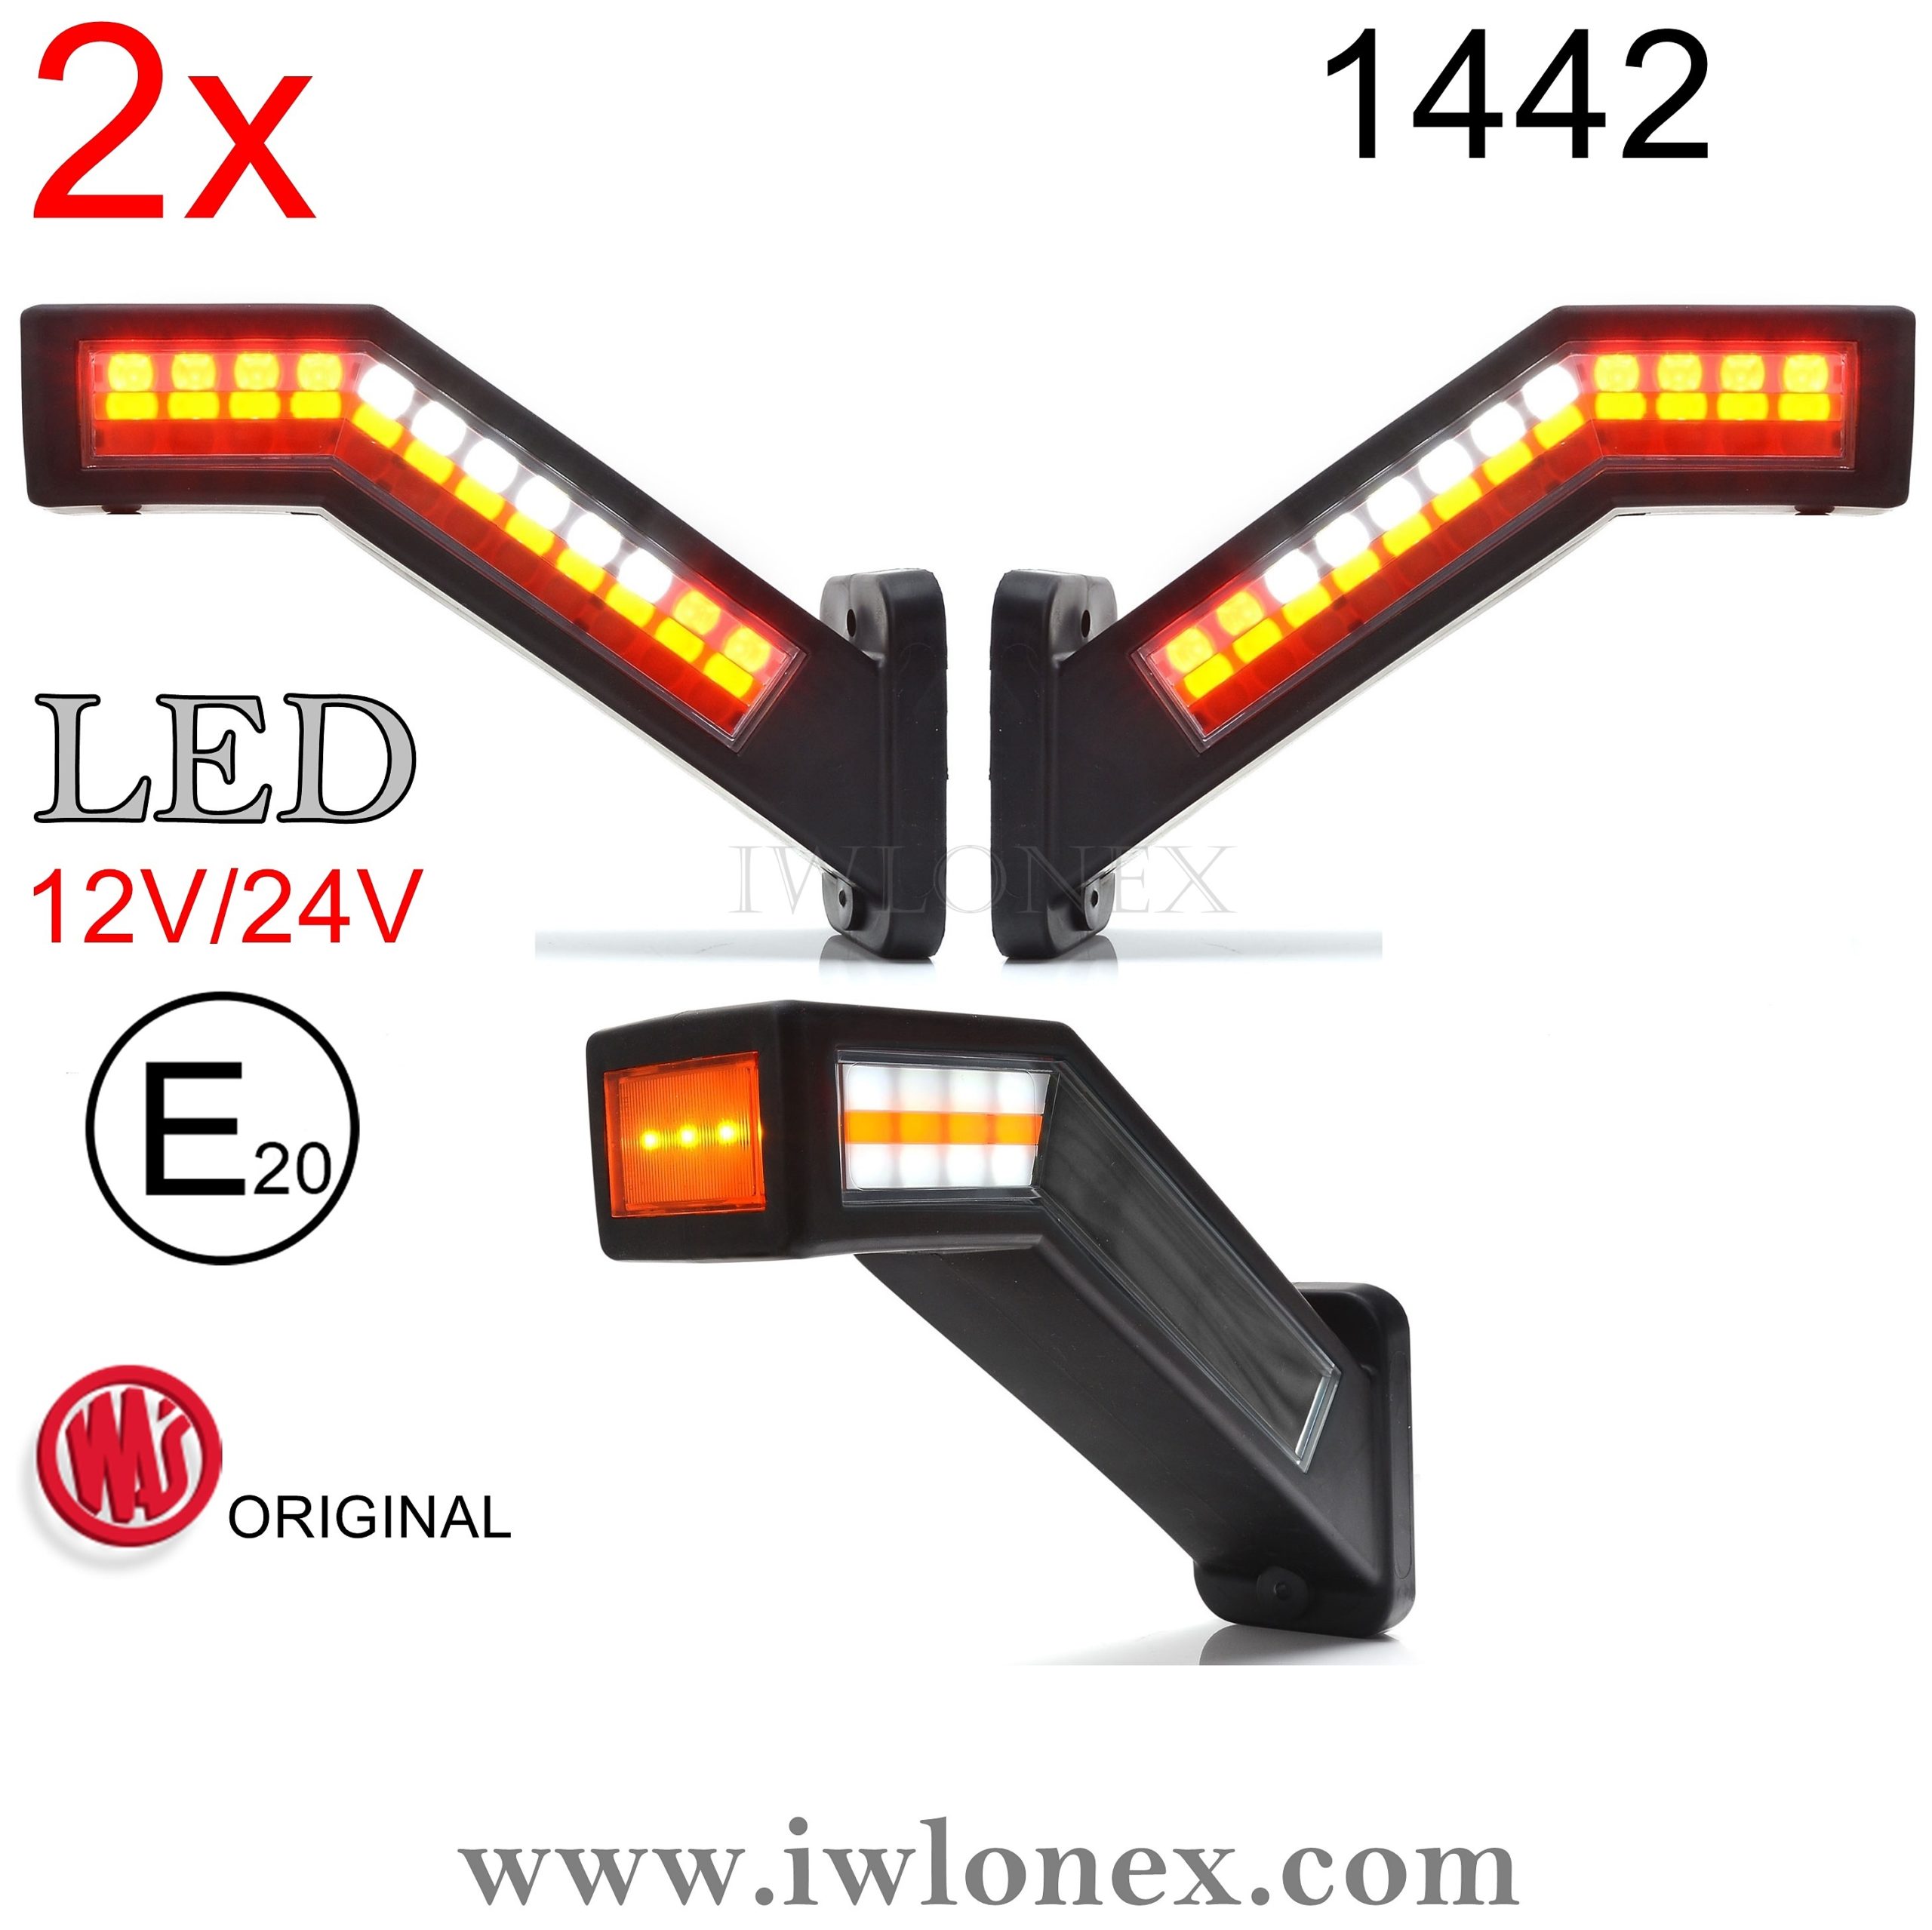 2 x LED Begrenzungsleuchten Positionsleuchten leuchten Rot / Weiß 12/24v